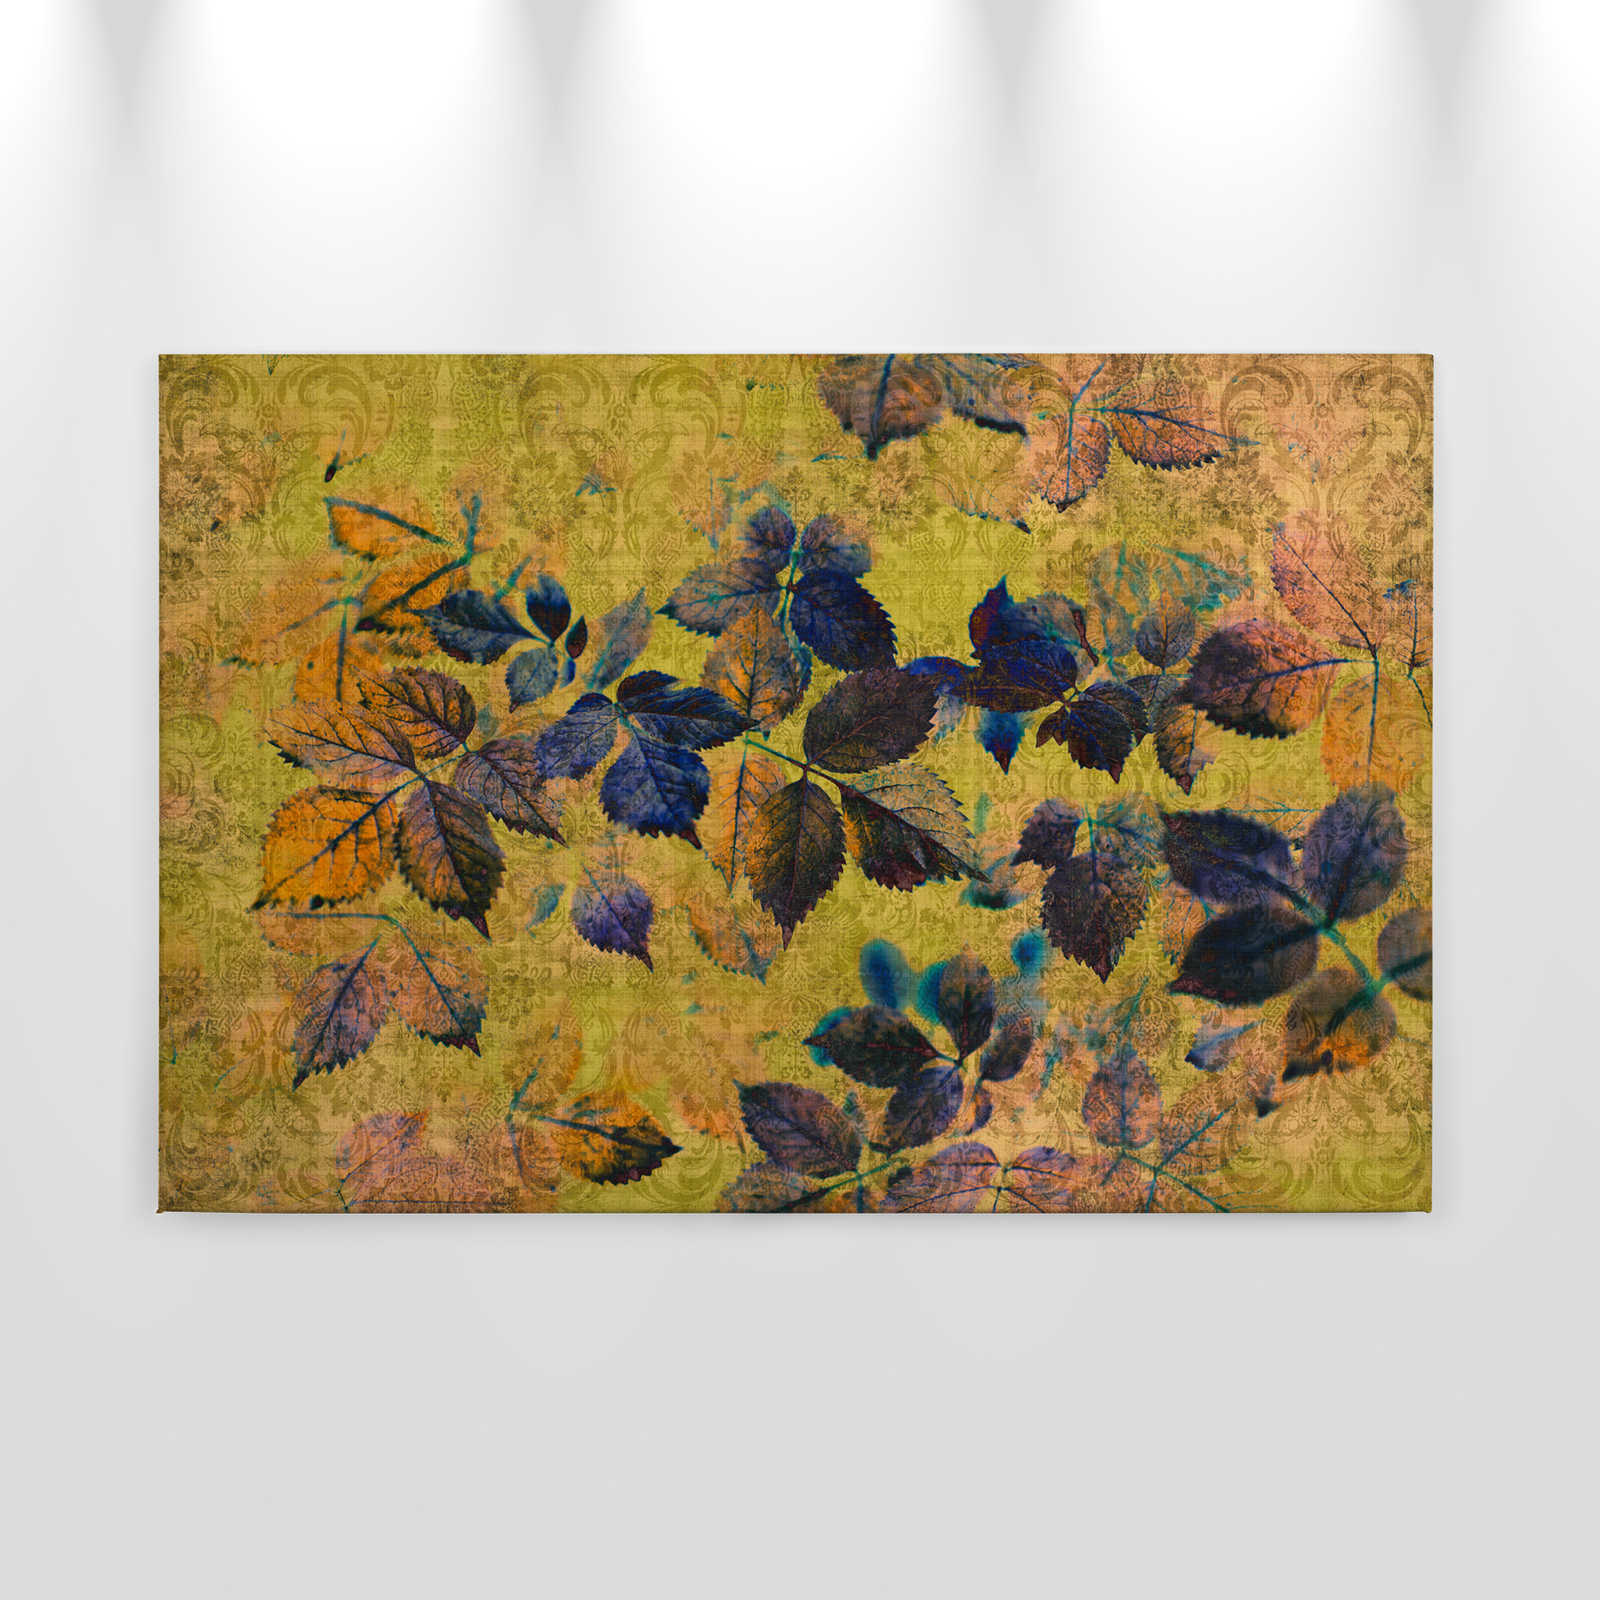             Indian summer 1 - Canvas schilderij met bladeren en ornamenten in natuurlijk linnen structuur - 0.90 m x 0.60 m
        